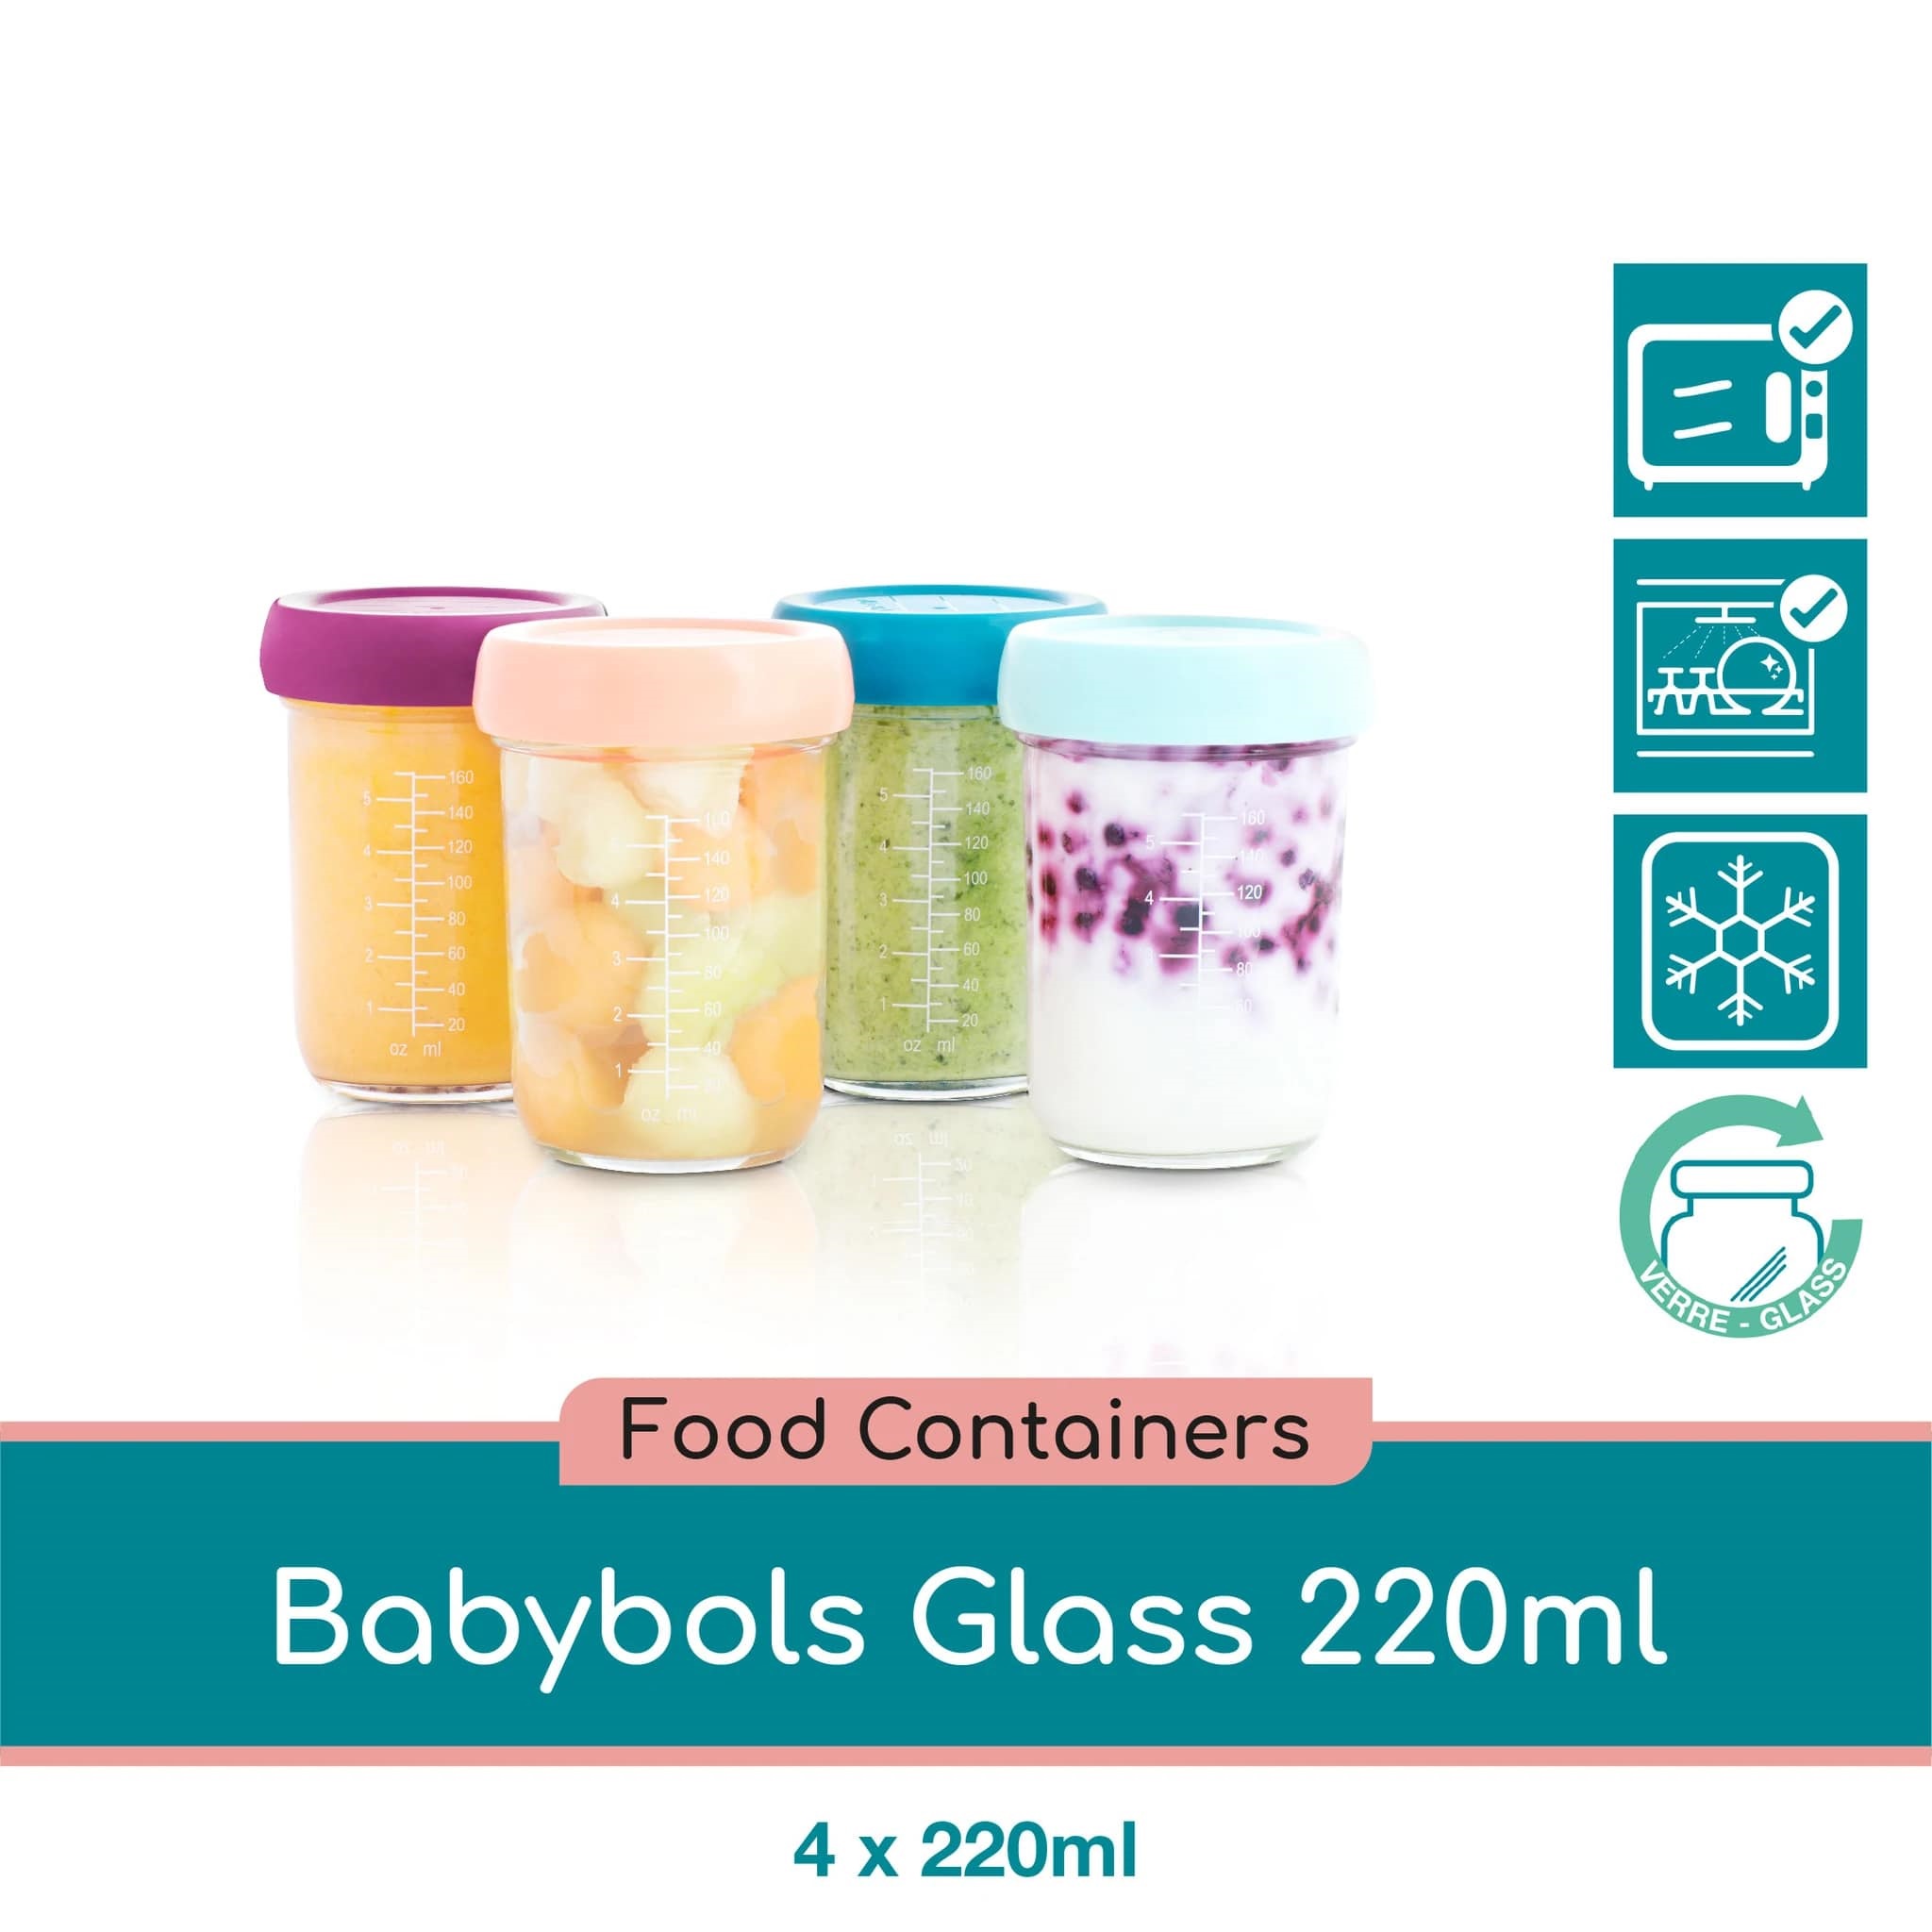 Babymoov Glass Babybols - 220ml x4